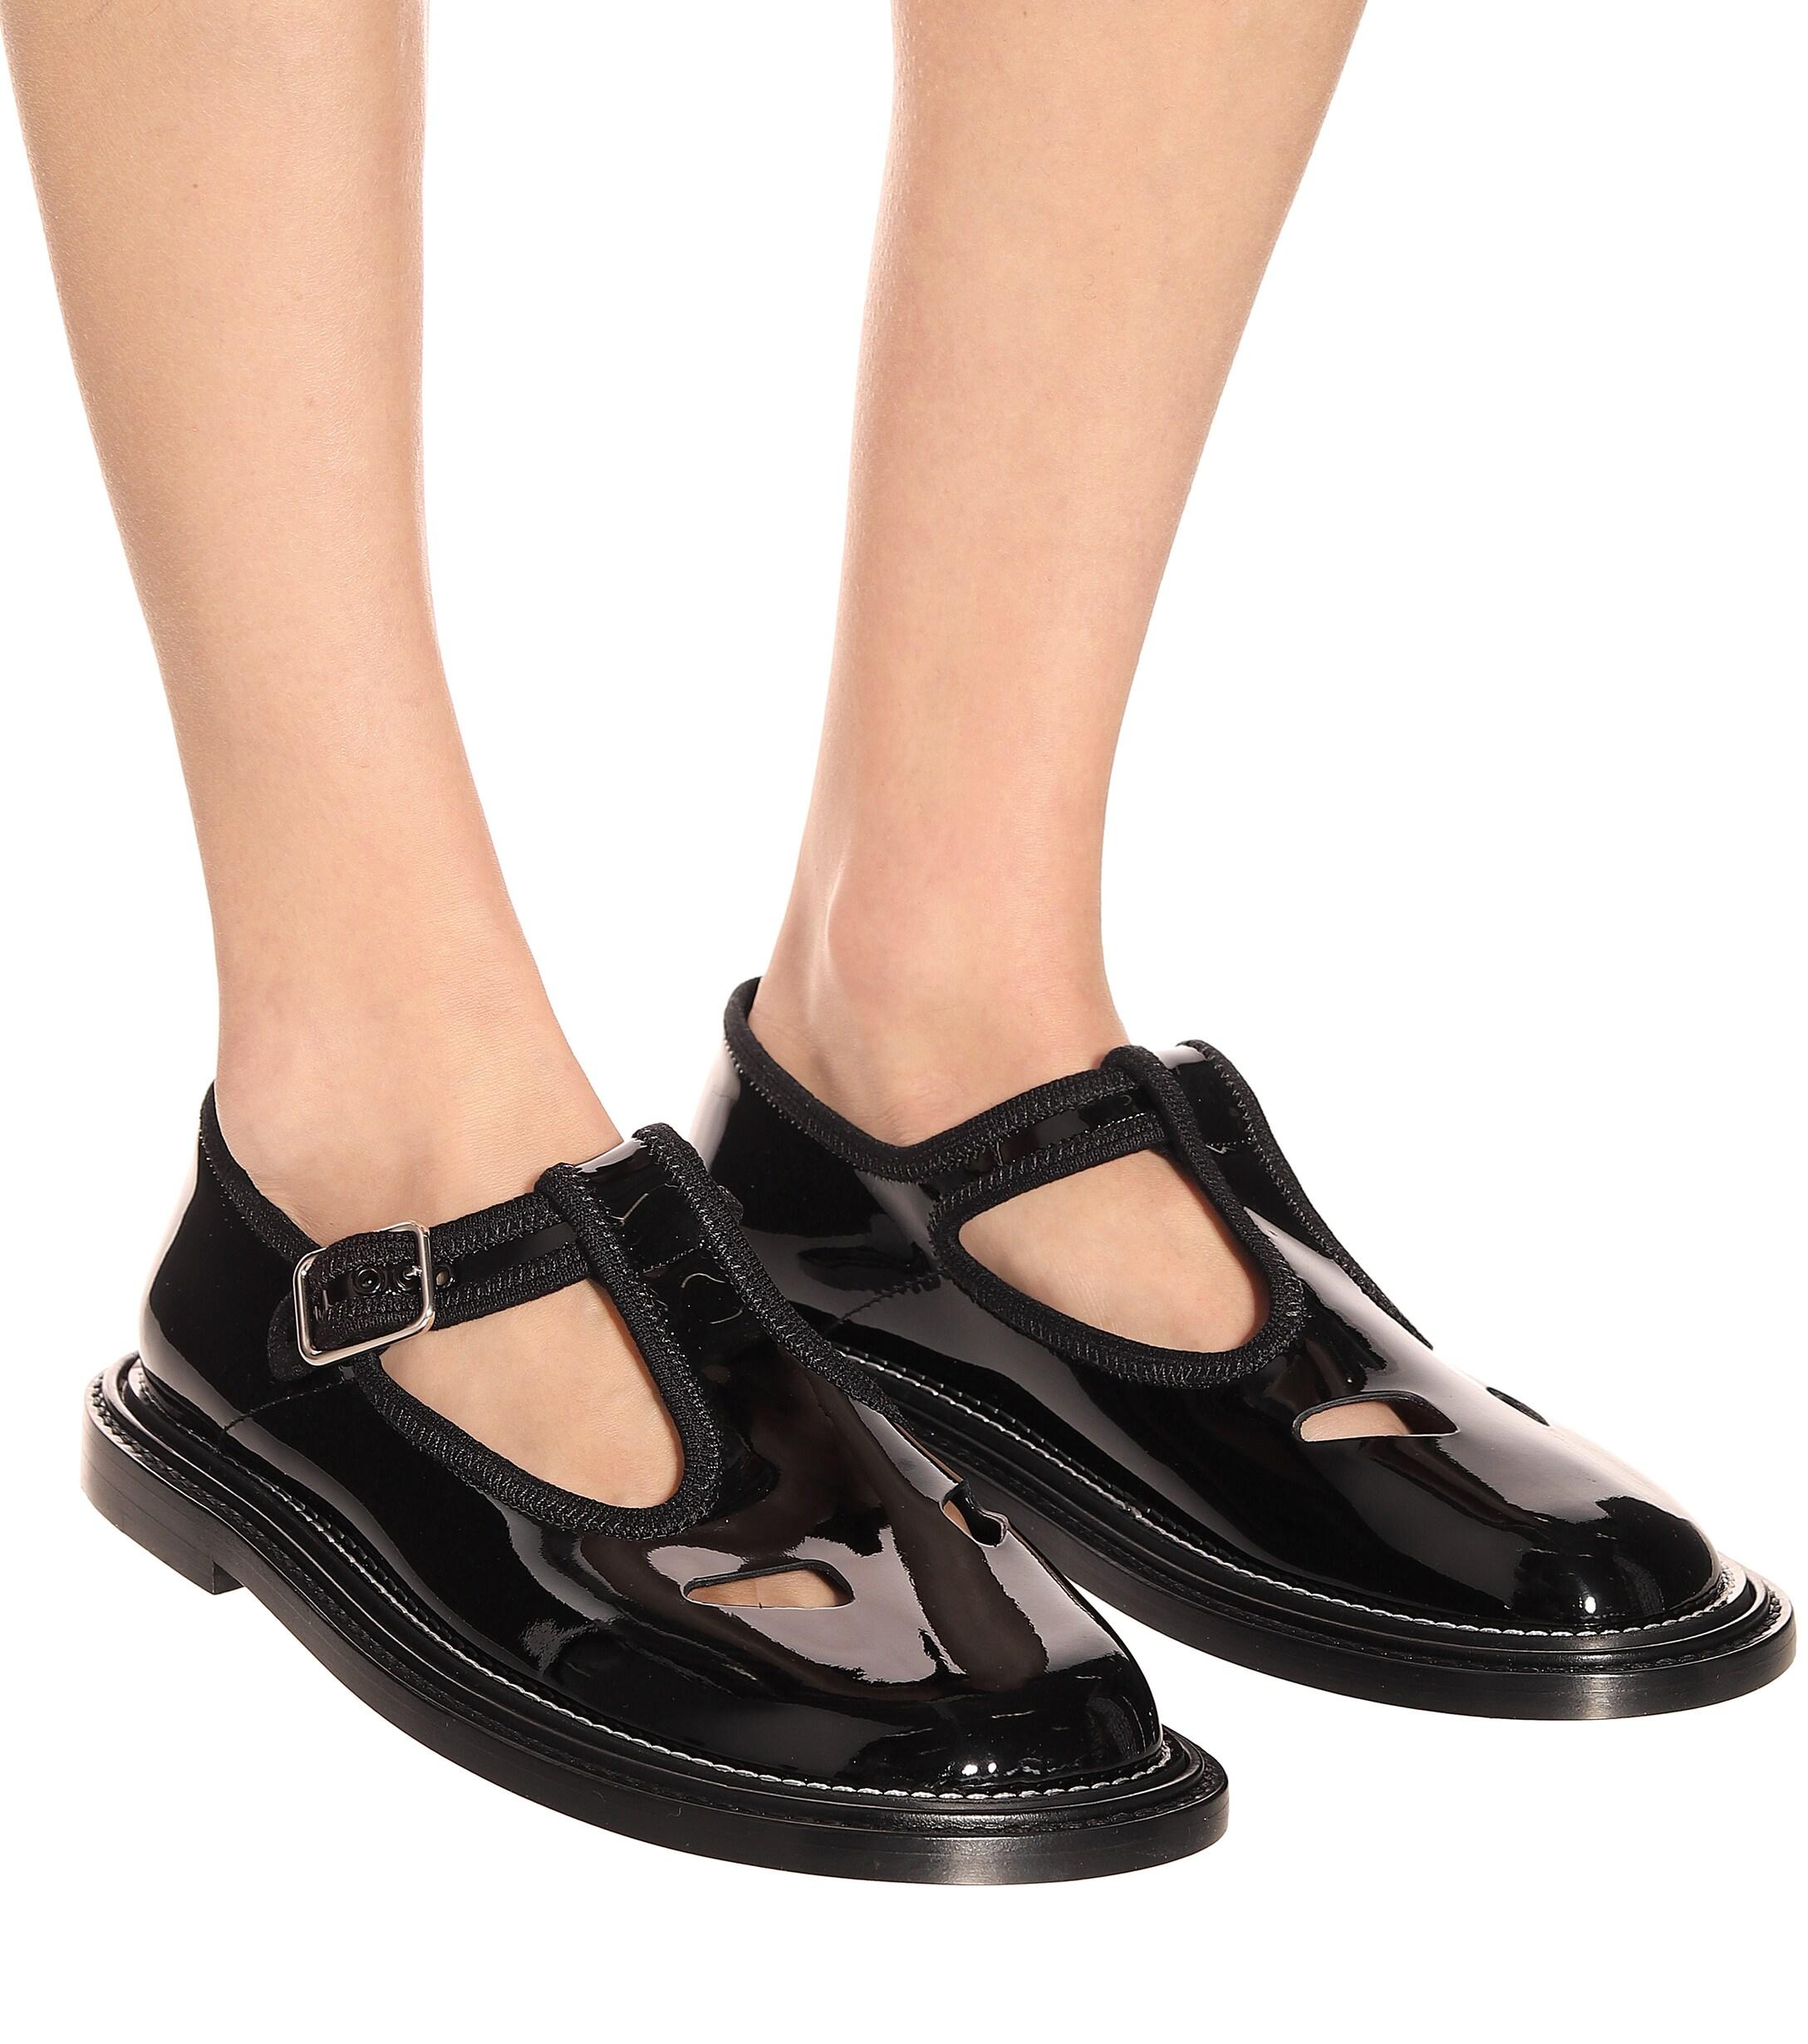 black mary jane flat shoes